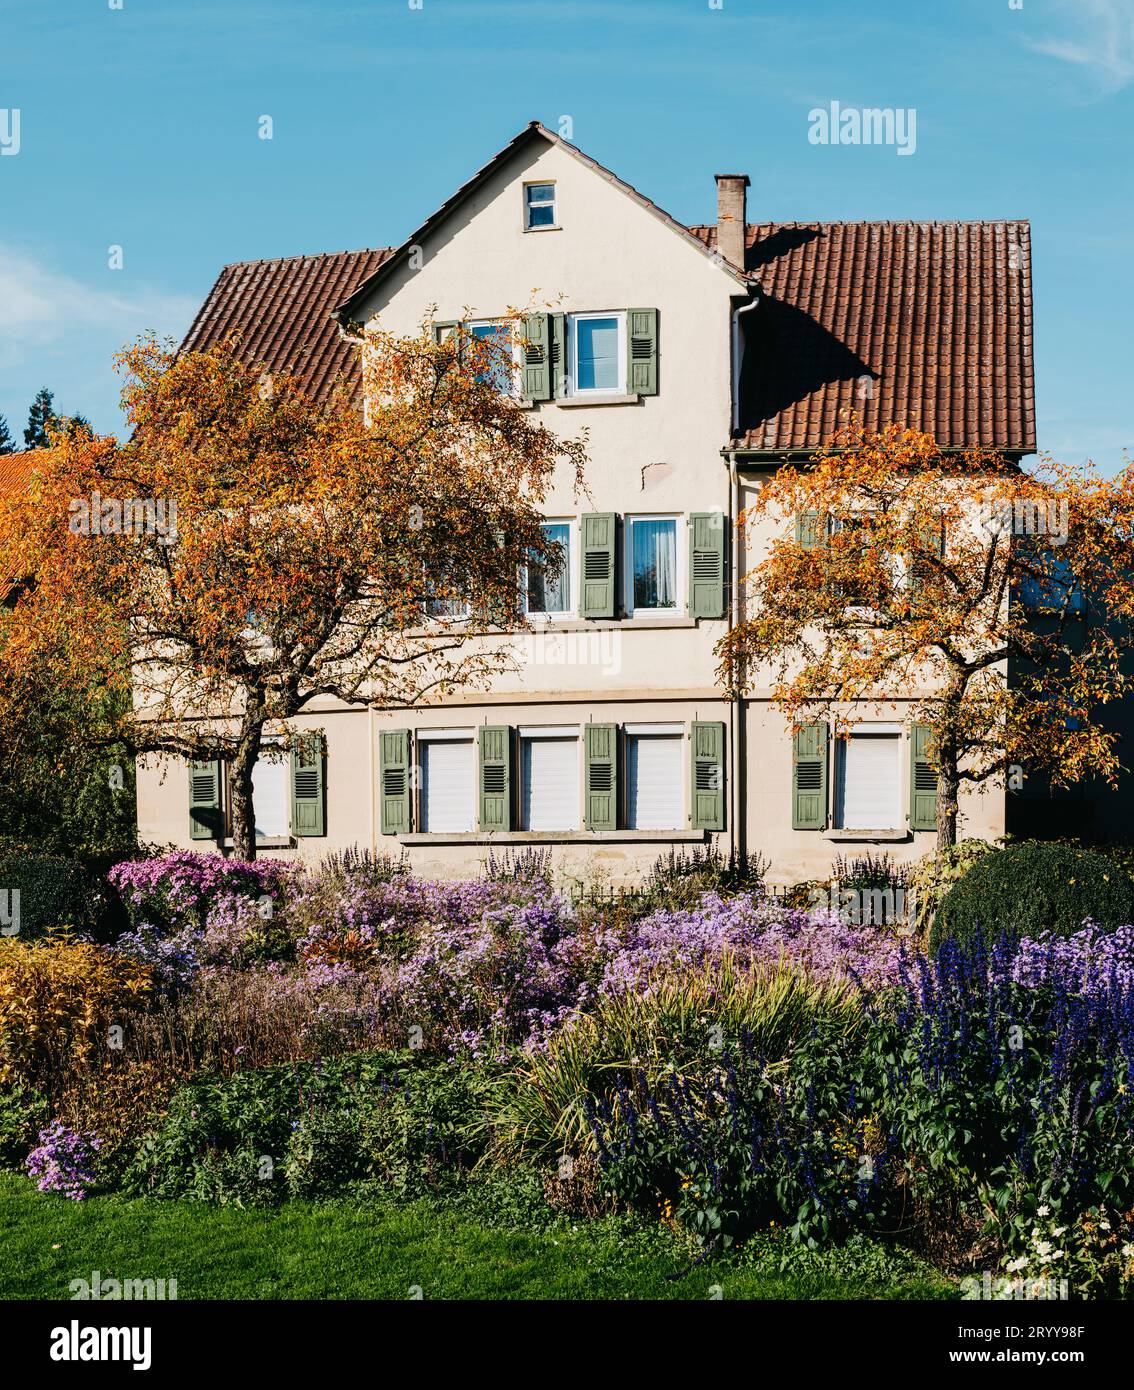 Haus mit schönem Garten im Herbst. Blumen im Stadtpark Bietigheim-Bissingen, Baden-Württemberg, Deutschland, Europa. Herbst Pa Stockfoto